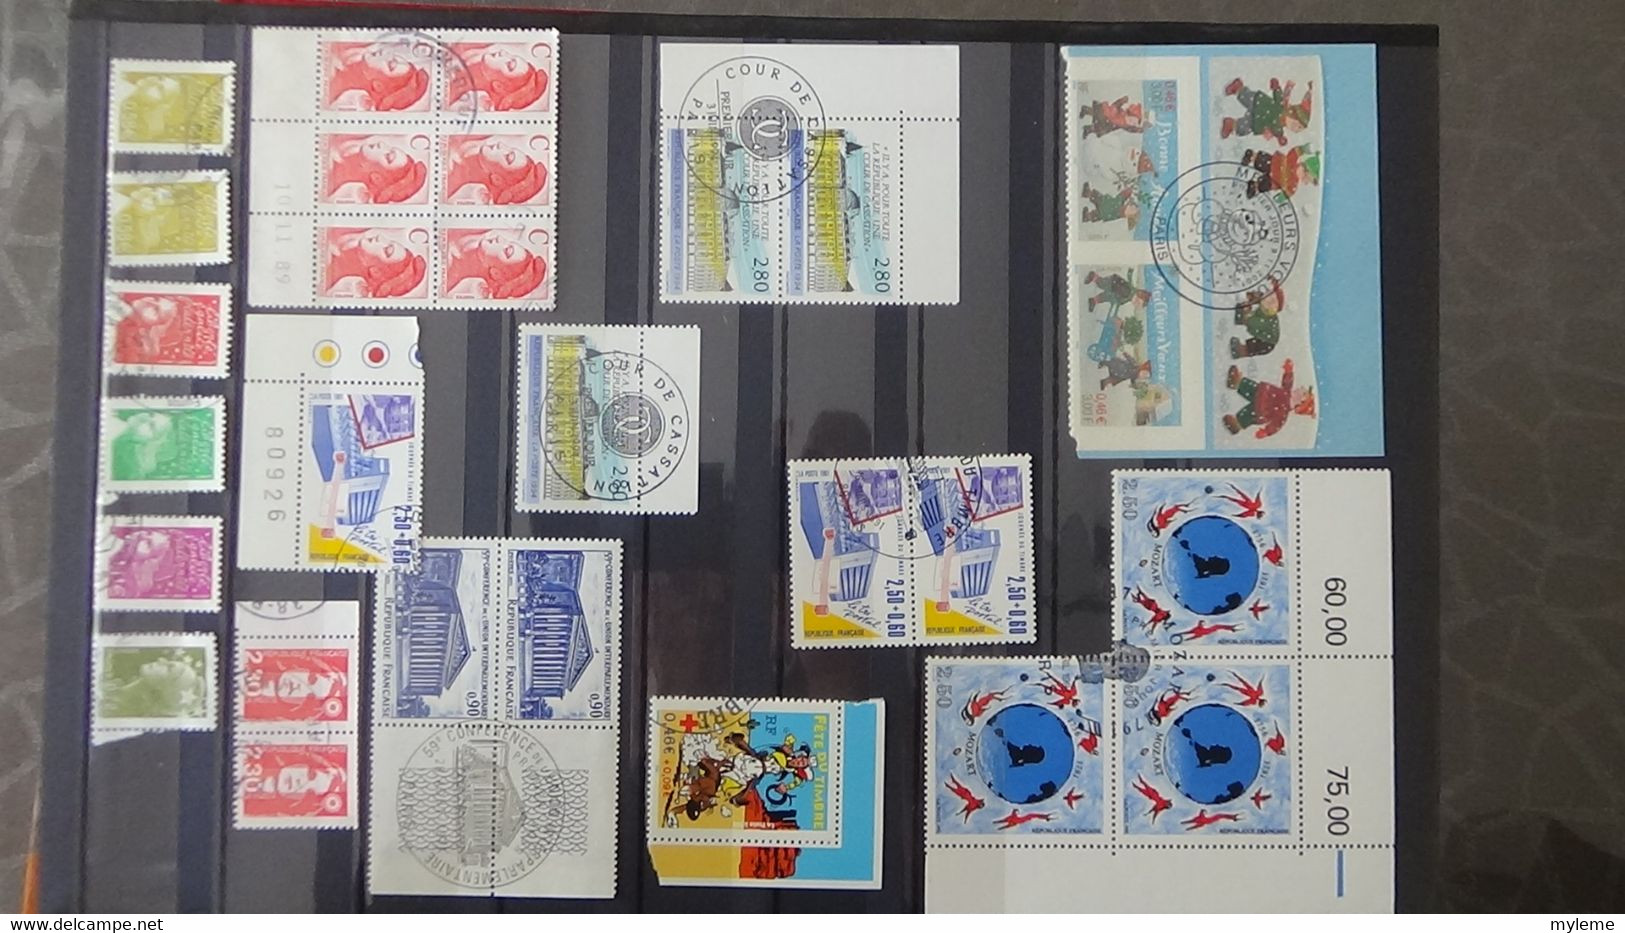 U30 Collection de timbres, blocs et carnets oblitérés (ayant circulés pour la plupart) de France. A saisir !!!